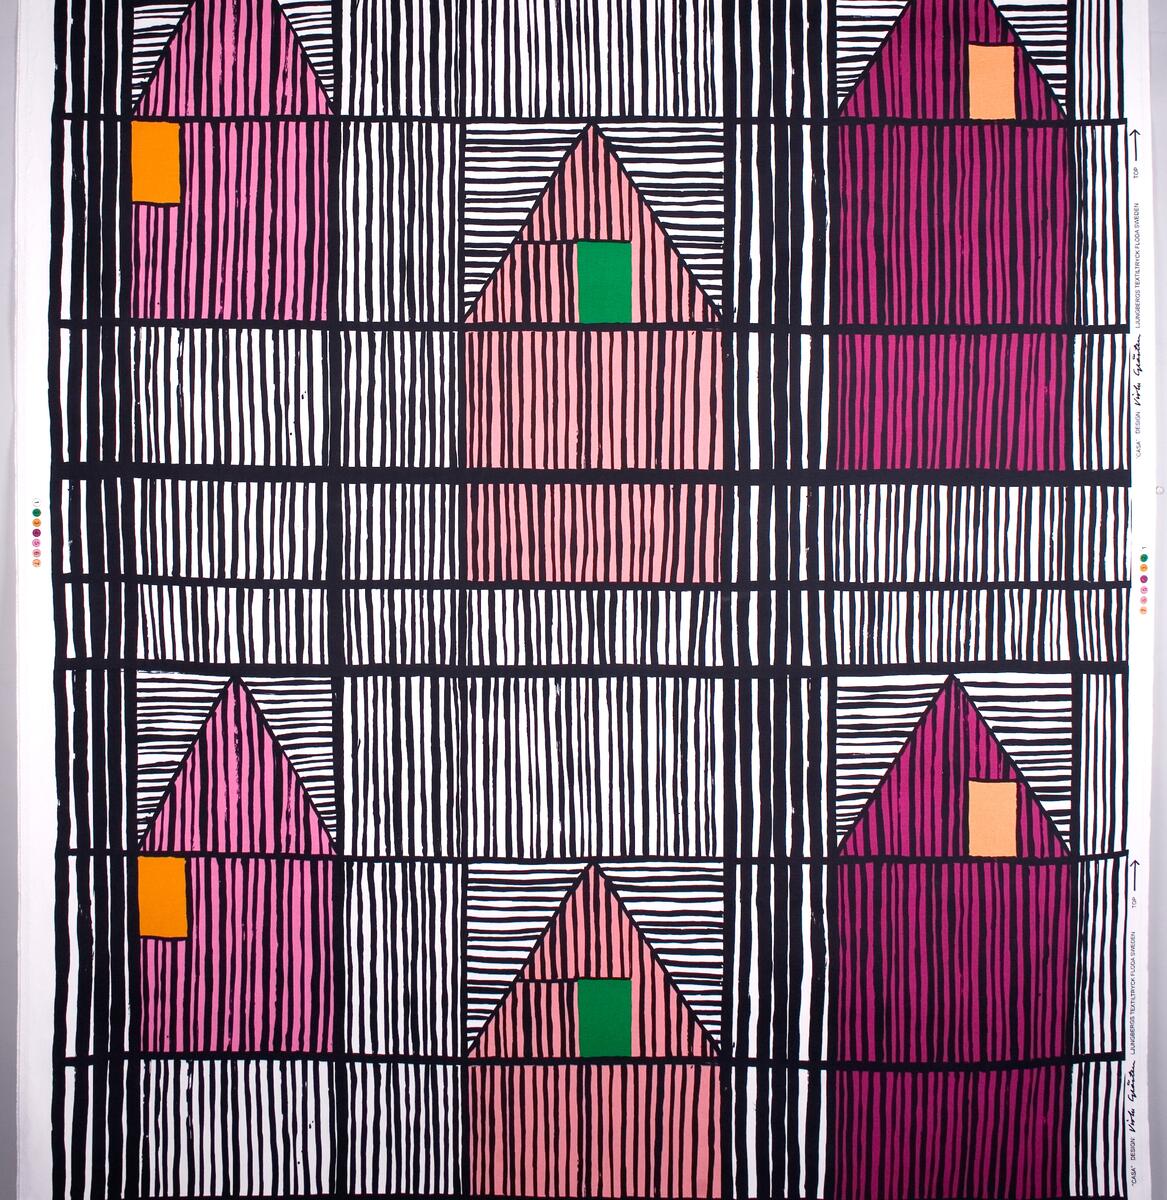 Geometriskt mönster inspirerat av danska korsvirkeshus. Vit botten , svarta streck och streck i vinrött, rosa, aprikos, rektanglar i gult och grönt